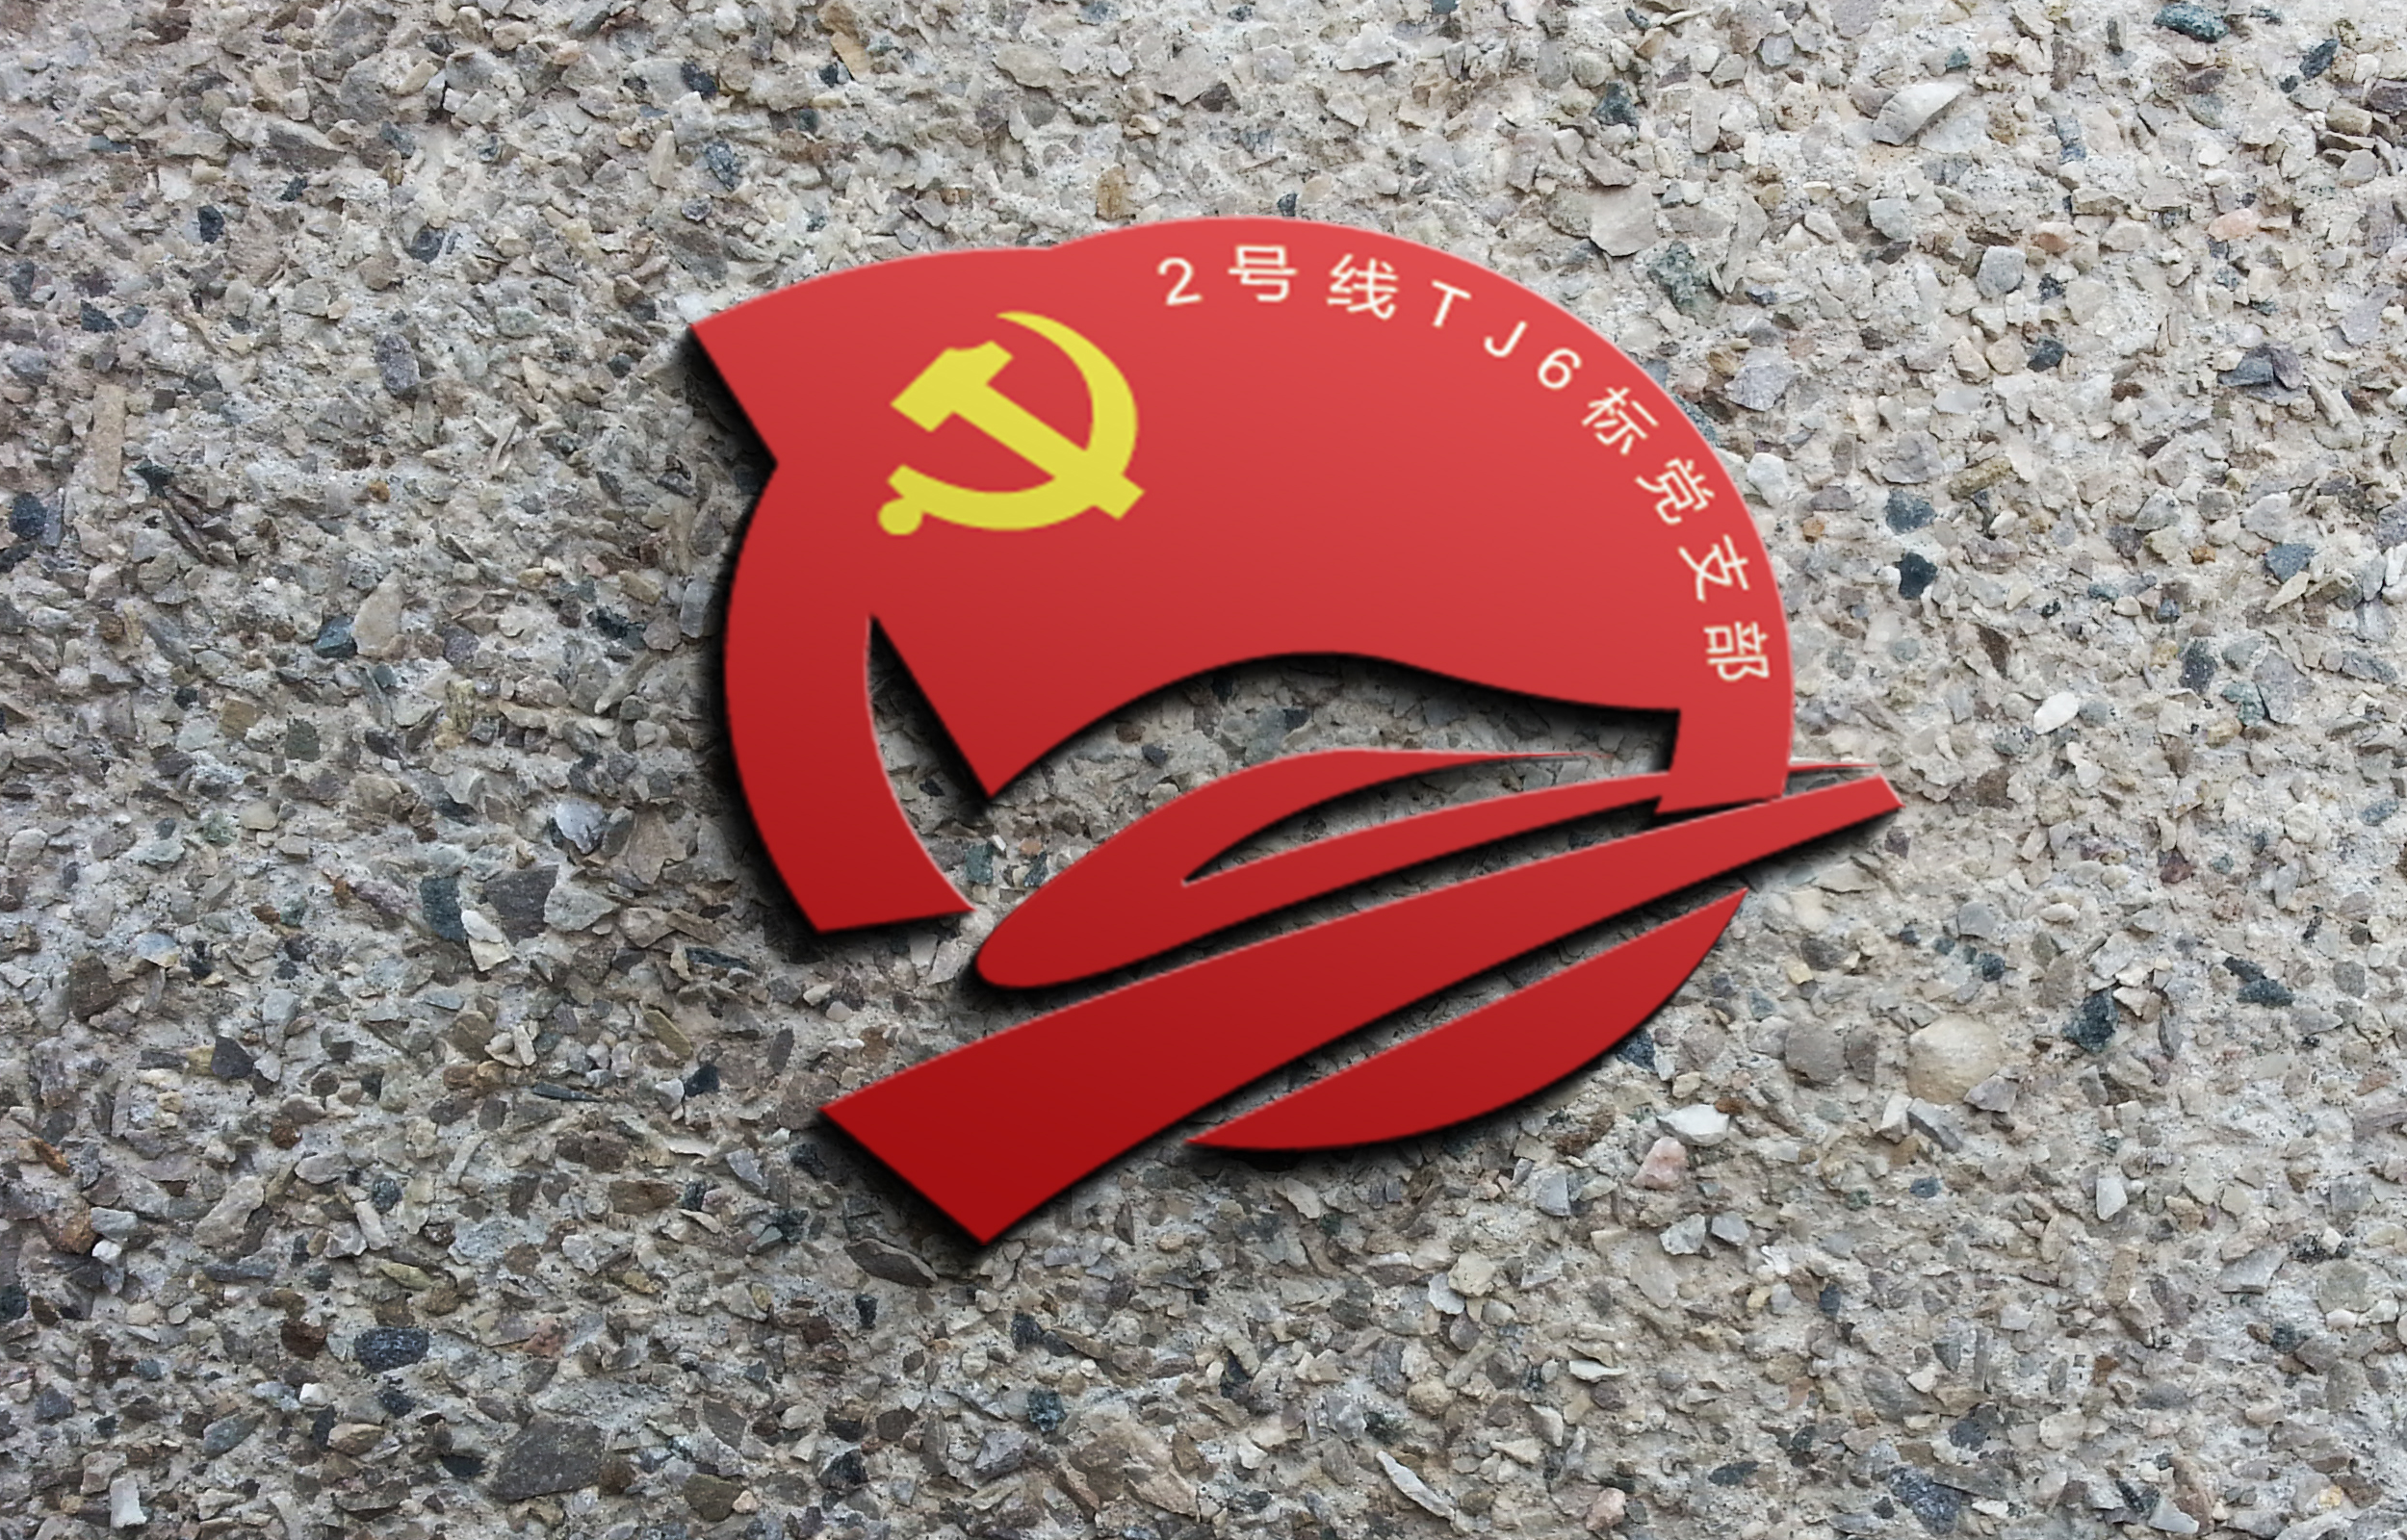 先锋党支部 logo